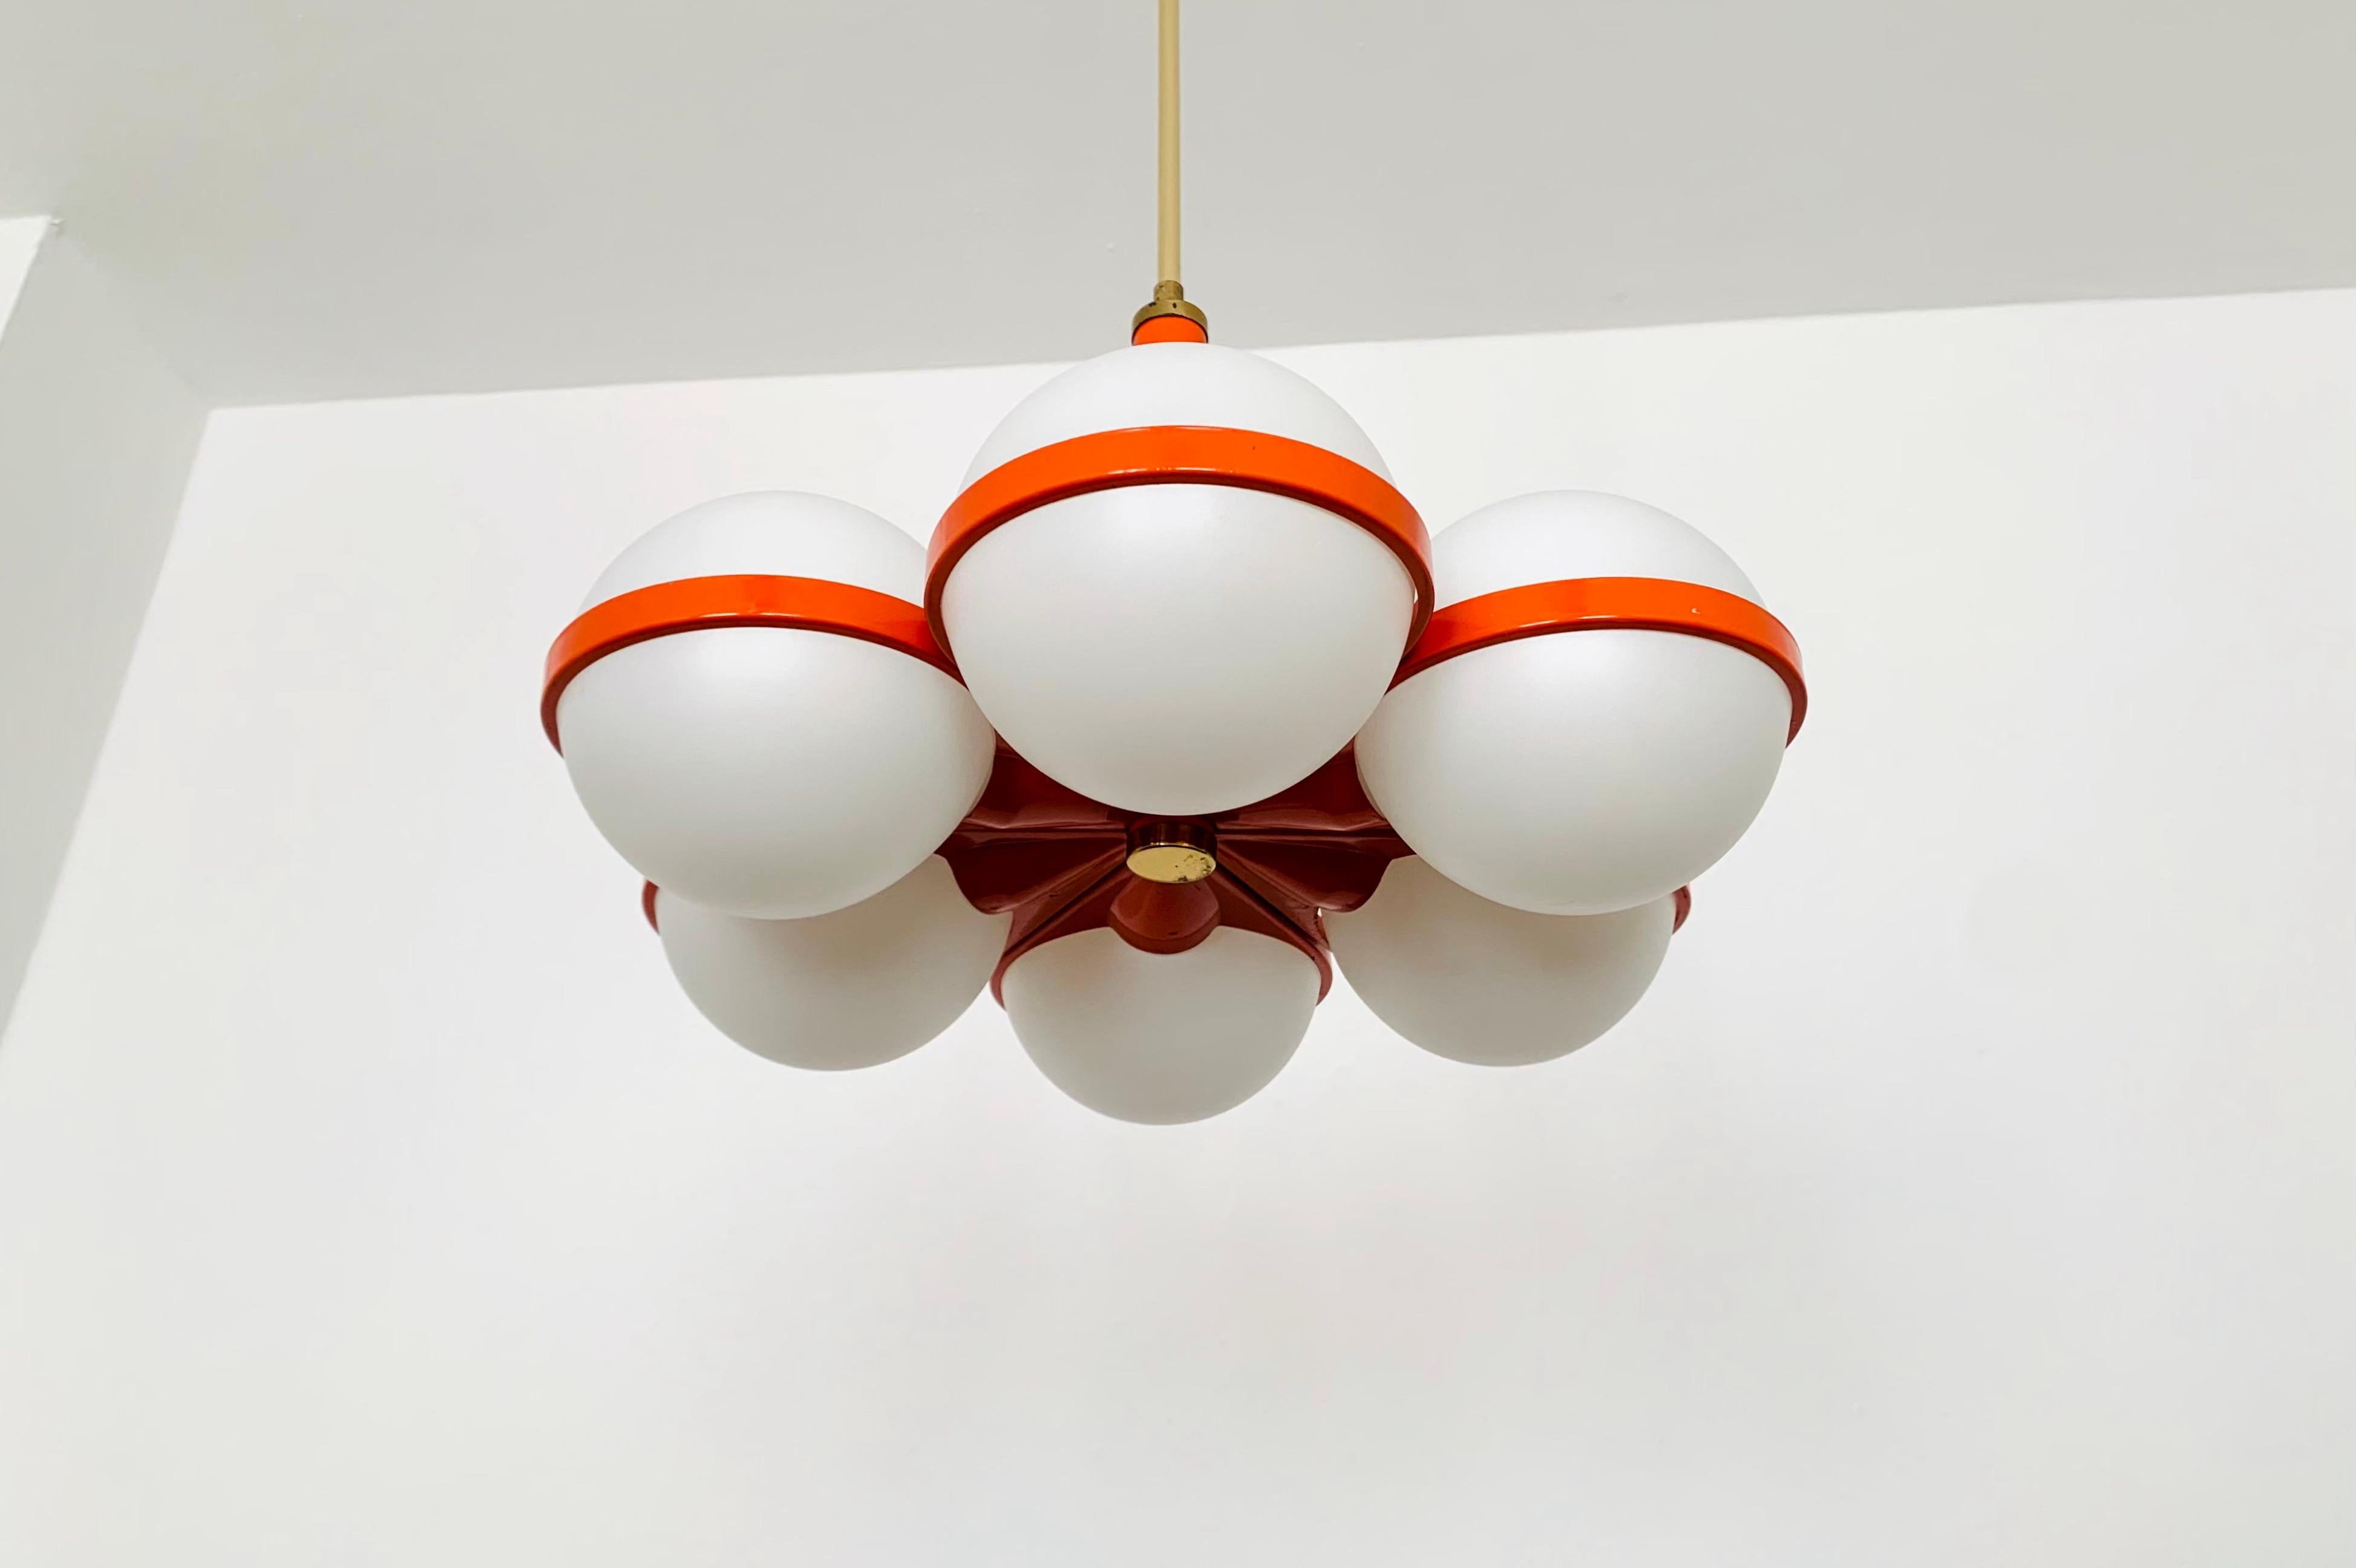 Schöner und seltener Sputnik-Kronleuchter aus den 1960er Jahren.
Die 6 Lampenschirme aus Opalglas verbreiten ein angenehmes Licht.
Sehr modernes Design mit einem fantastischen Look.

Bedingung:

Sehr guter Vintage-Zustand mit leichten